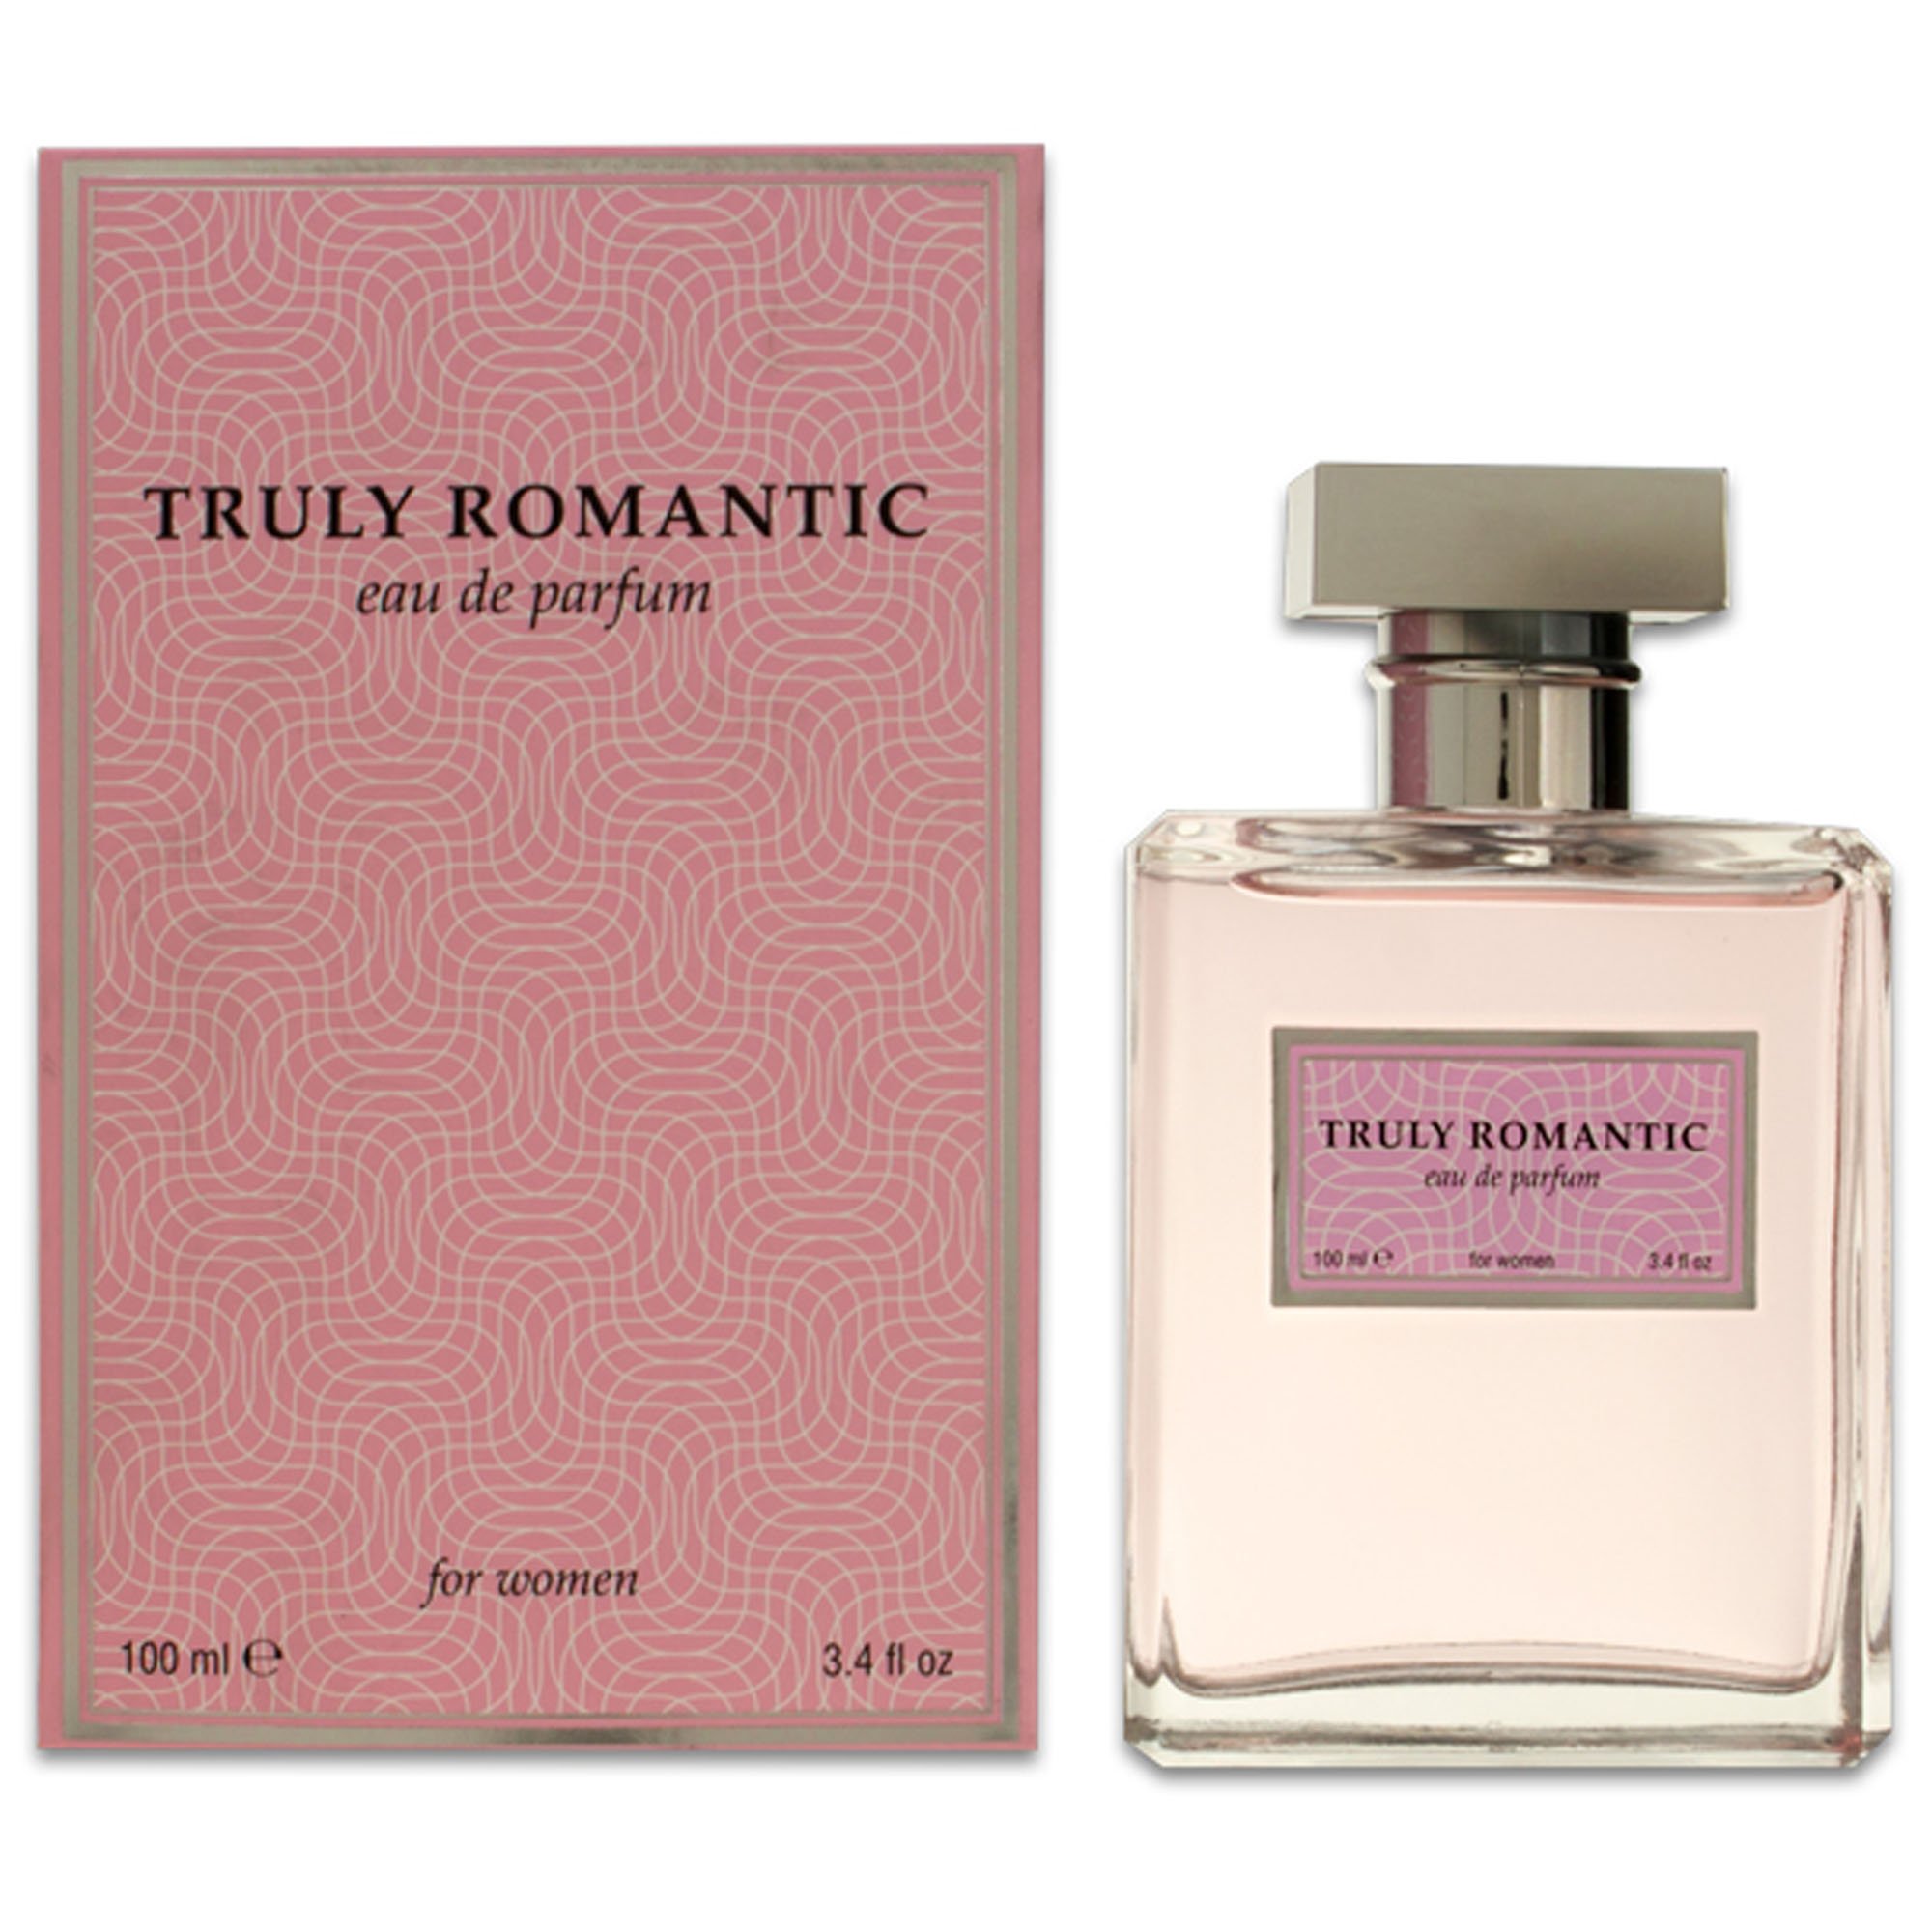 Women's Parfum Classic Impression Eau De Toilette Spay Fragrances Various (Truly Romantic)